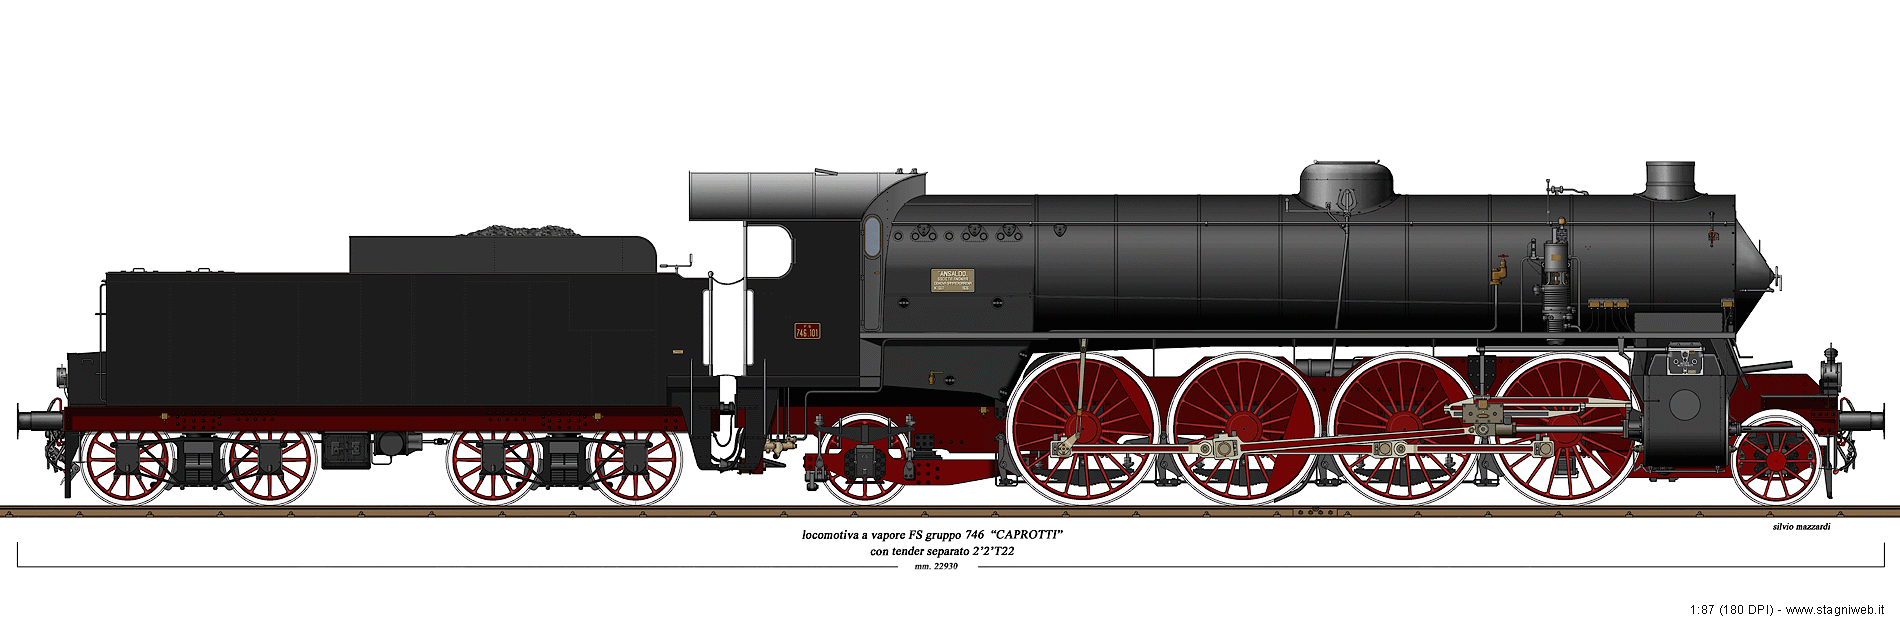 Locomotive a vapore - Gr. 746 Caprotti